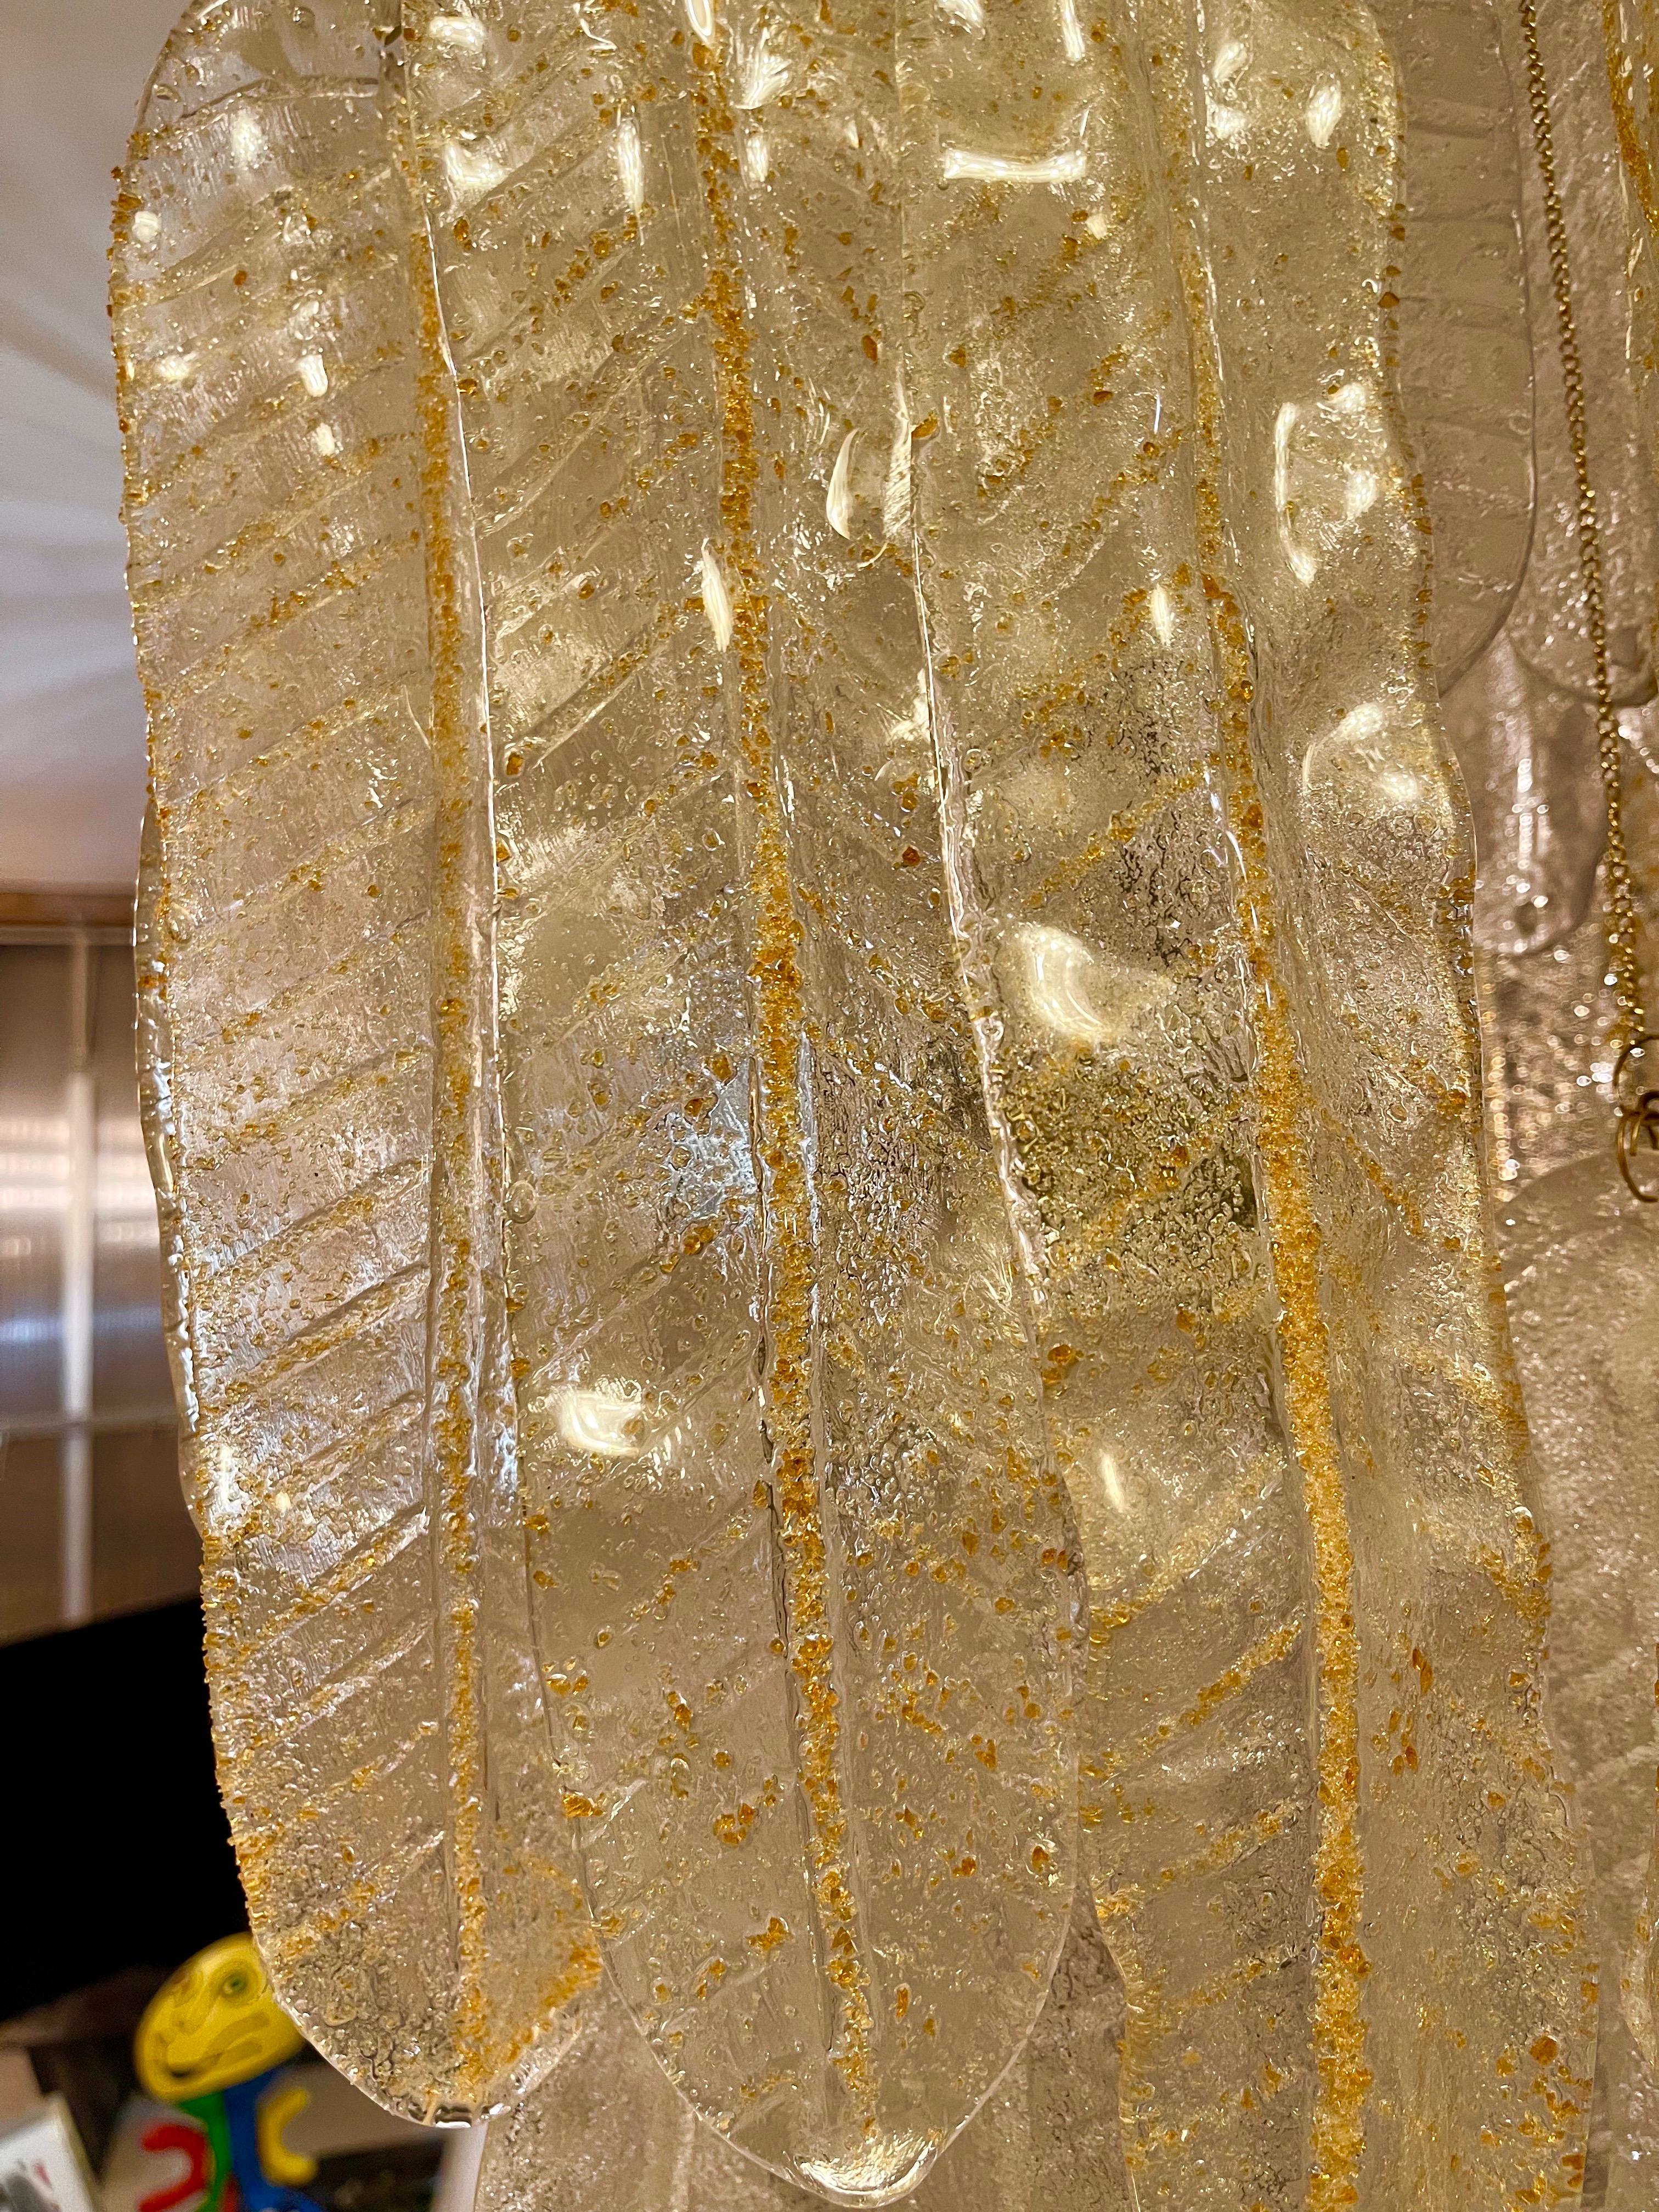 Außergewöhnliche Kaskade Anhänger mit Blättern Gold Glas und Eis Frost Murano überdimensioniert um 30 cm mit GILT GOLD Struktur. Das Design und die Qualität des Glases machen aus diesem Stück das Beste des italienischen Designs.
Diese einzigartige